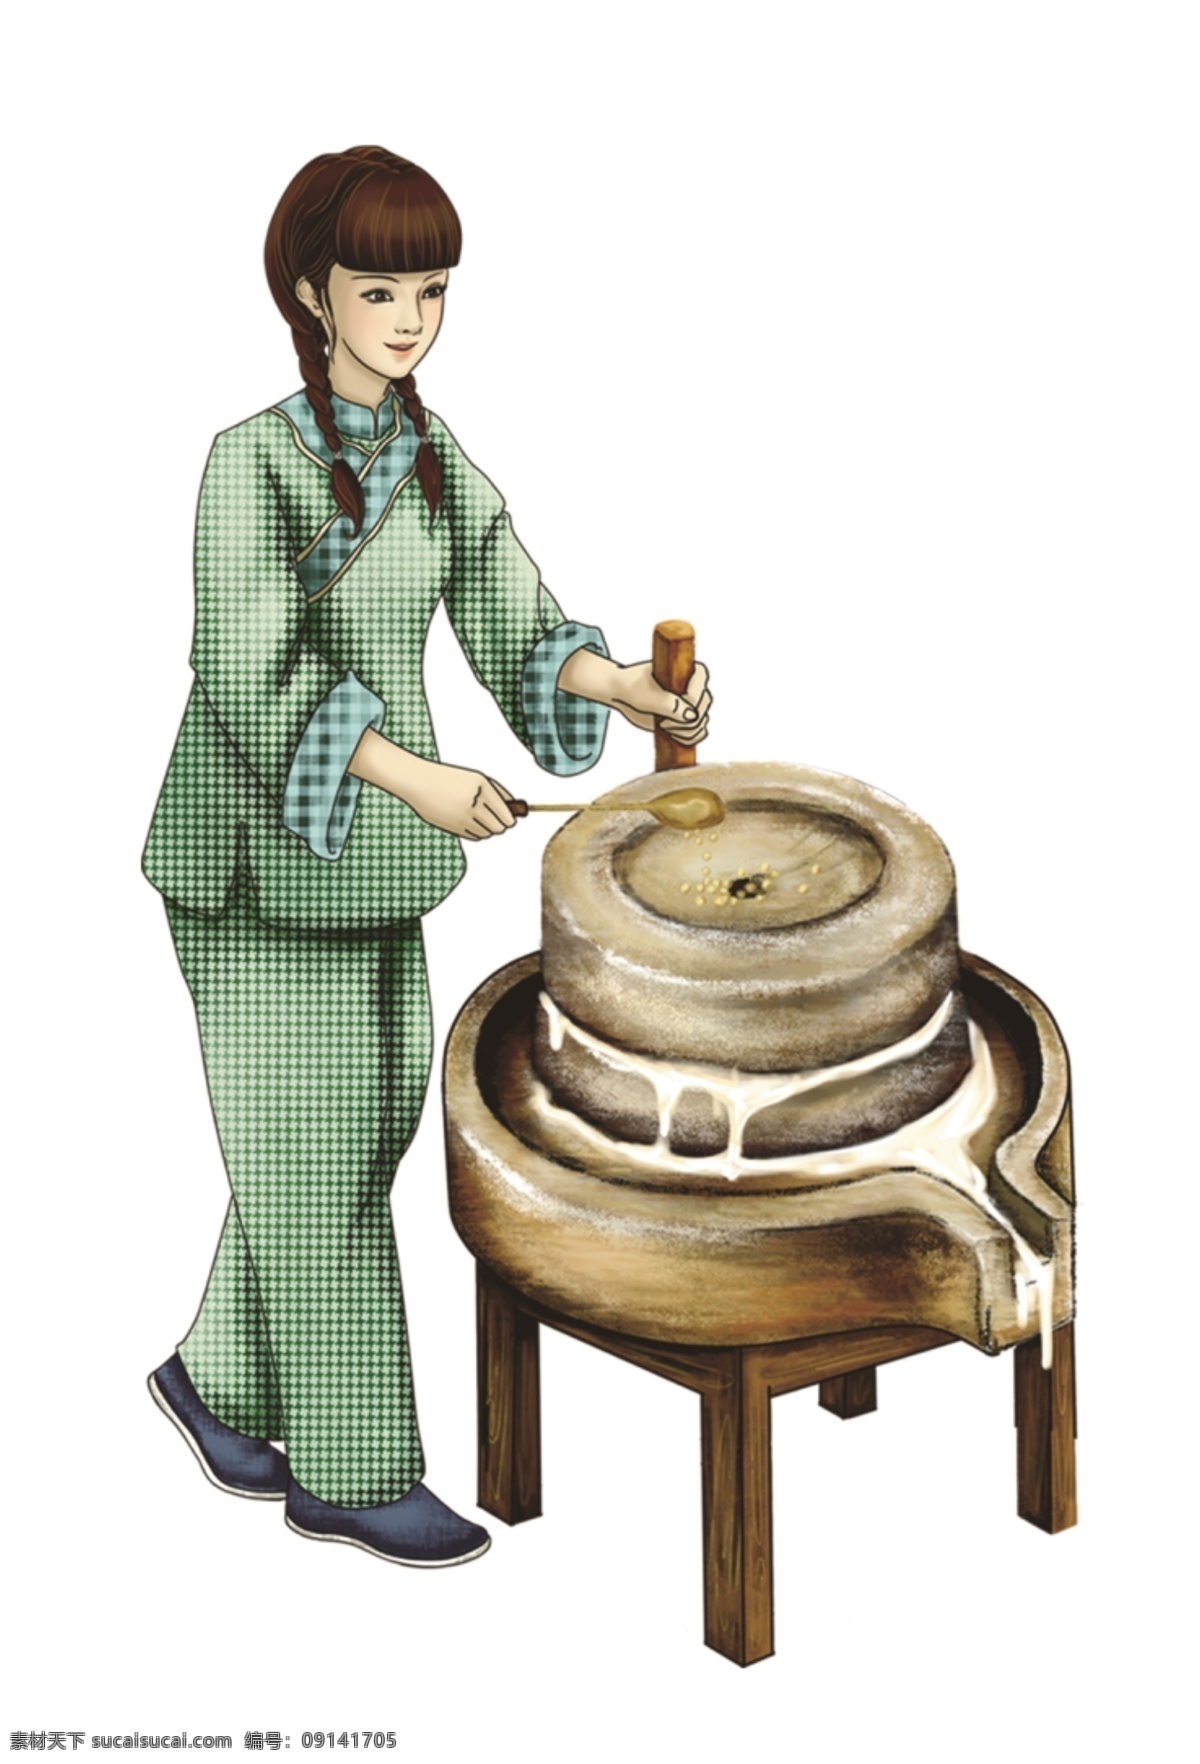 磨豆女 女孩 石磨 手持勺女孩 磨豆浆 卡通类 分层